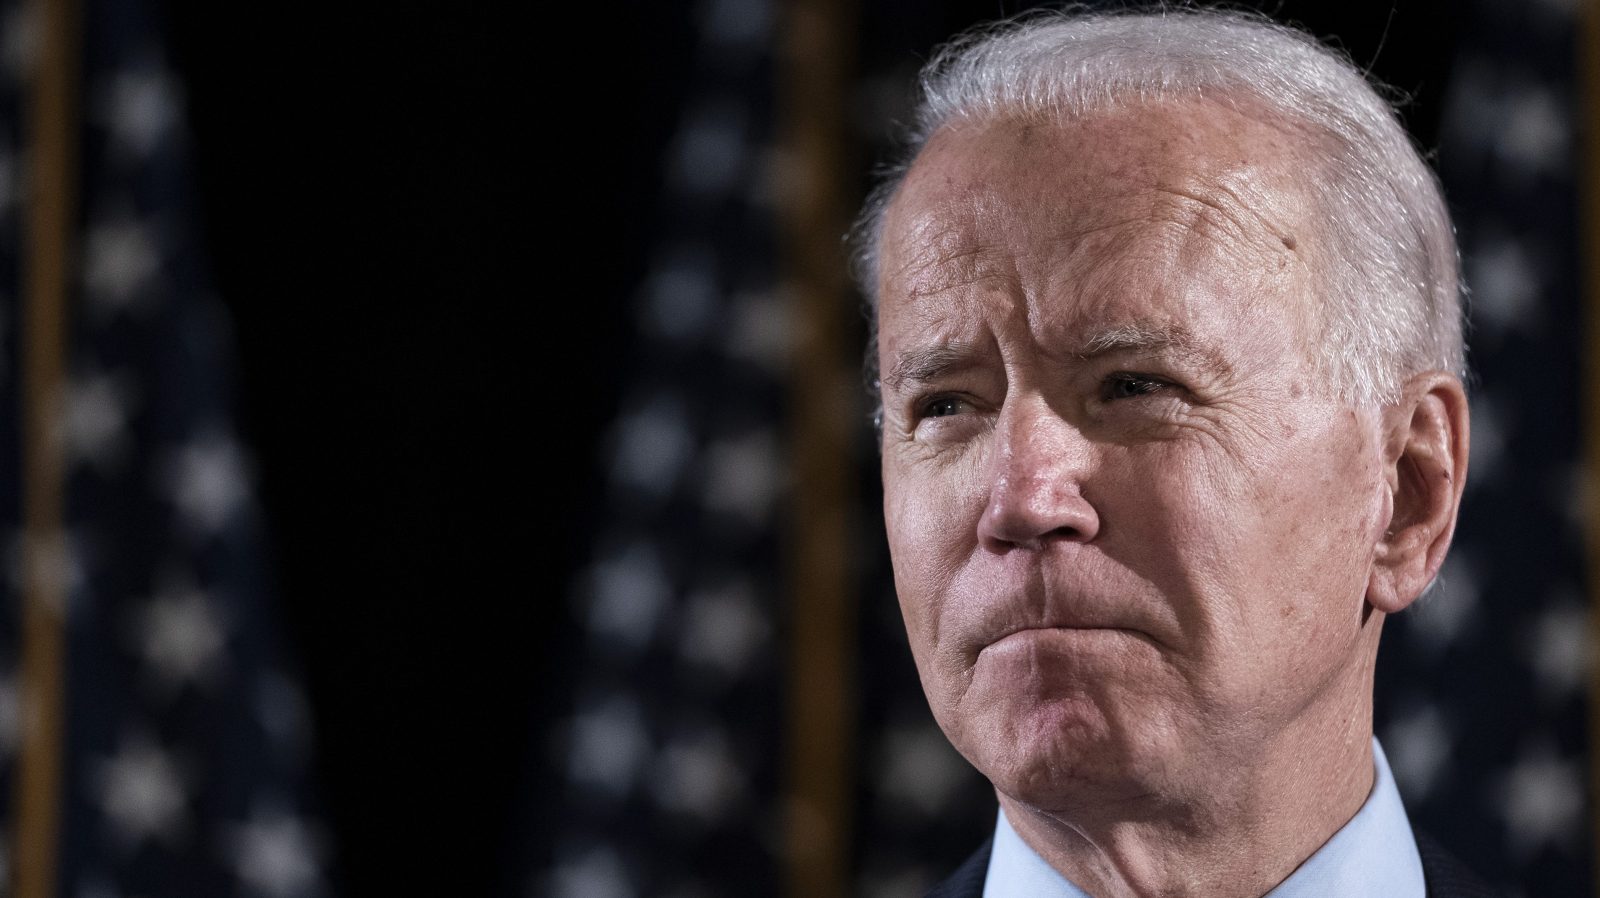 Chính quyền của Tổng thống Mỹ Joe Biden dự kiến sẽ hạn chế sử dụng các biện pháp cấm vận về kinh tế và tài chính